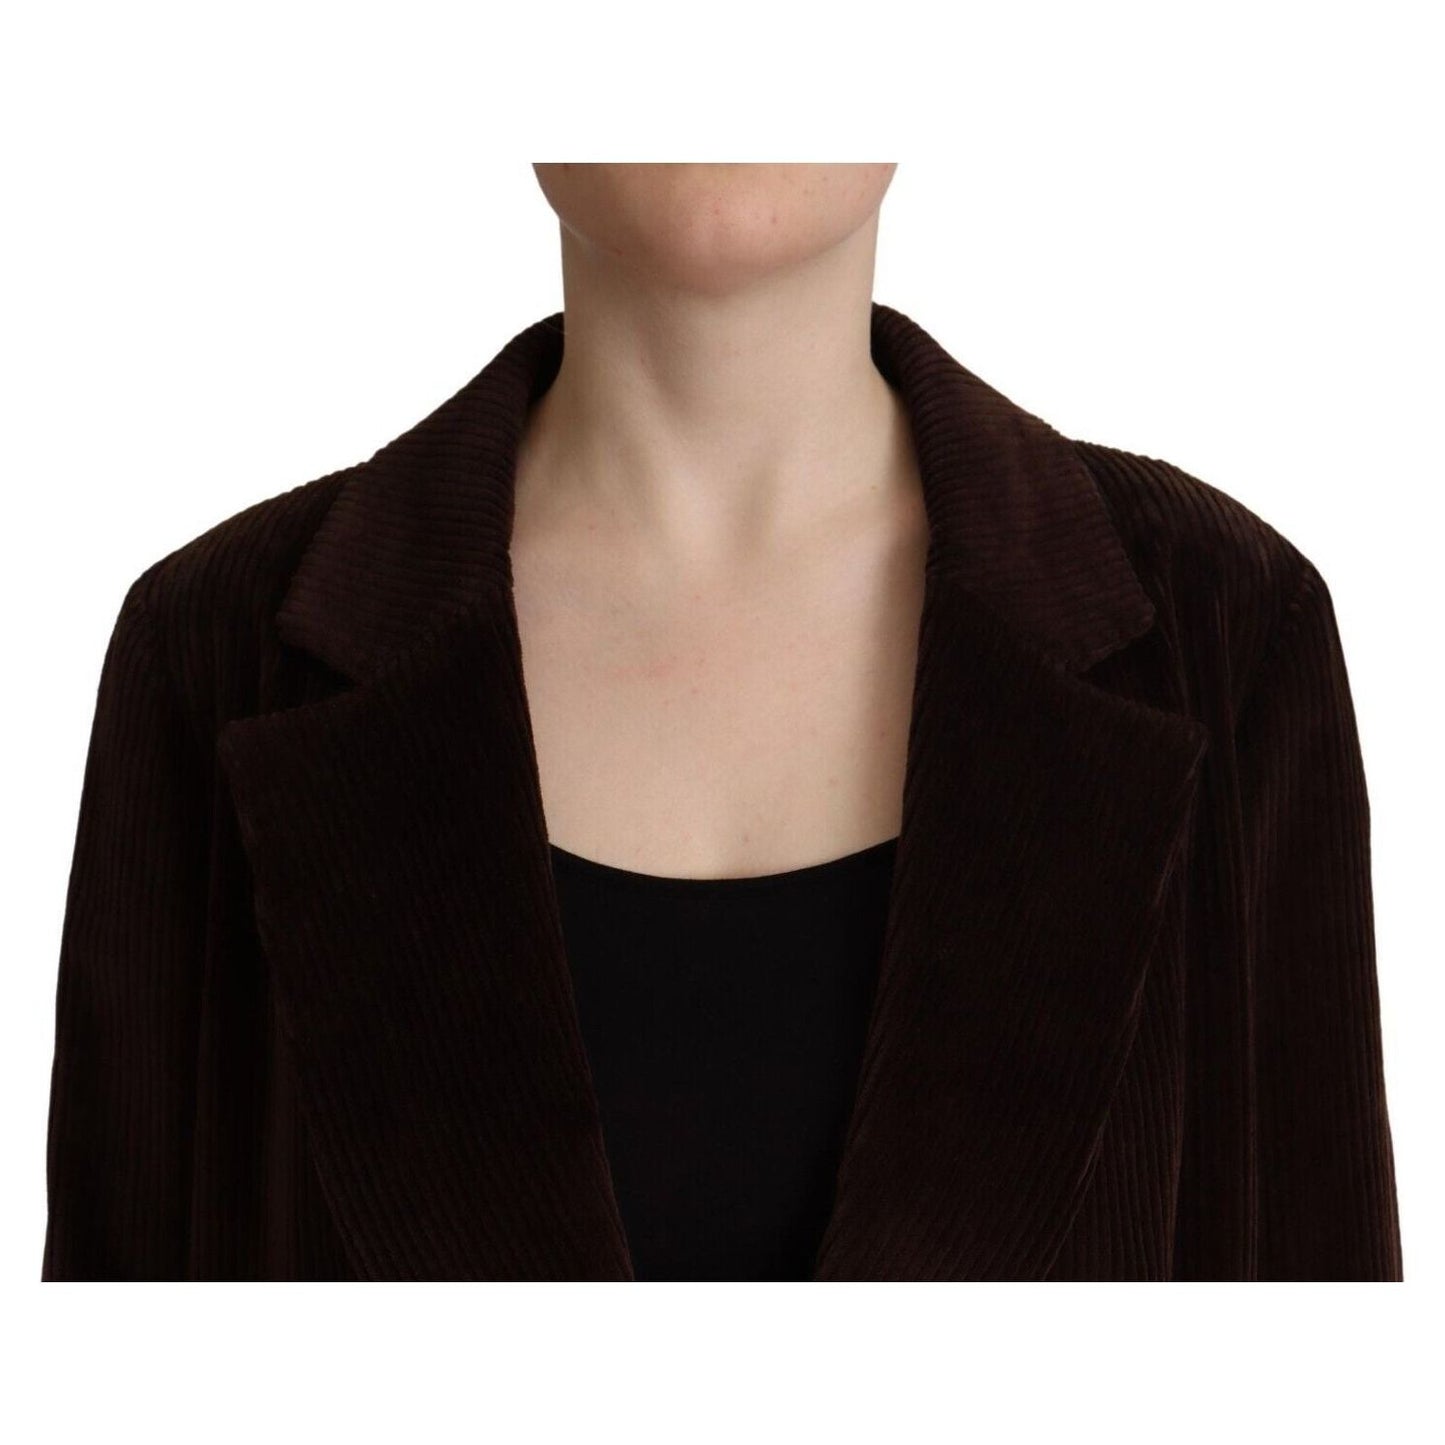 Dolce & Gabbana Elegant Burgundy Double-Breasted Trench Coat bordeaux-corduroy-cotton-blazer-oversized-jacket